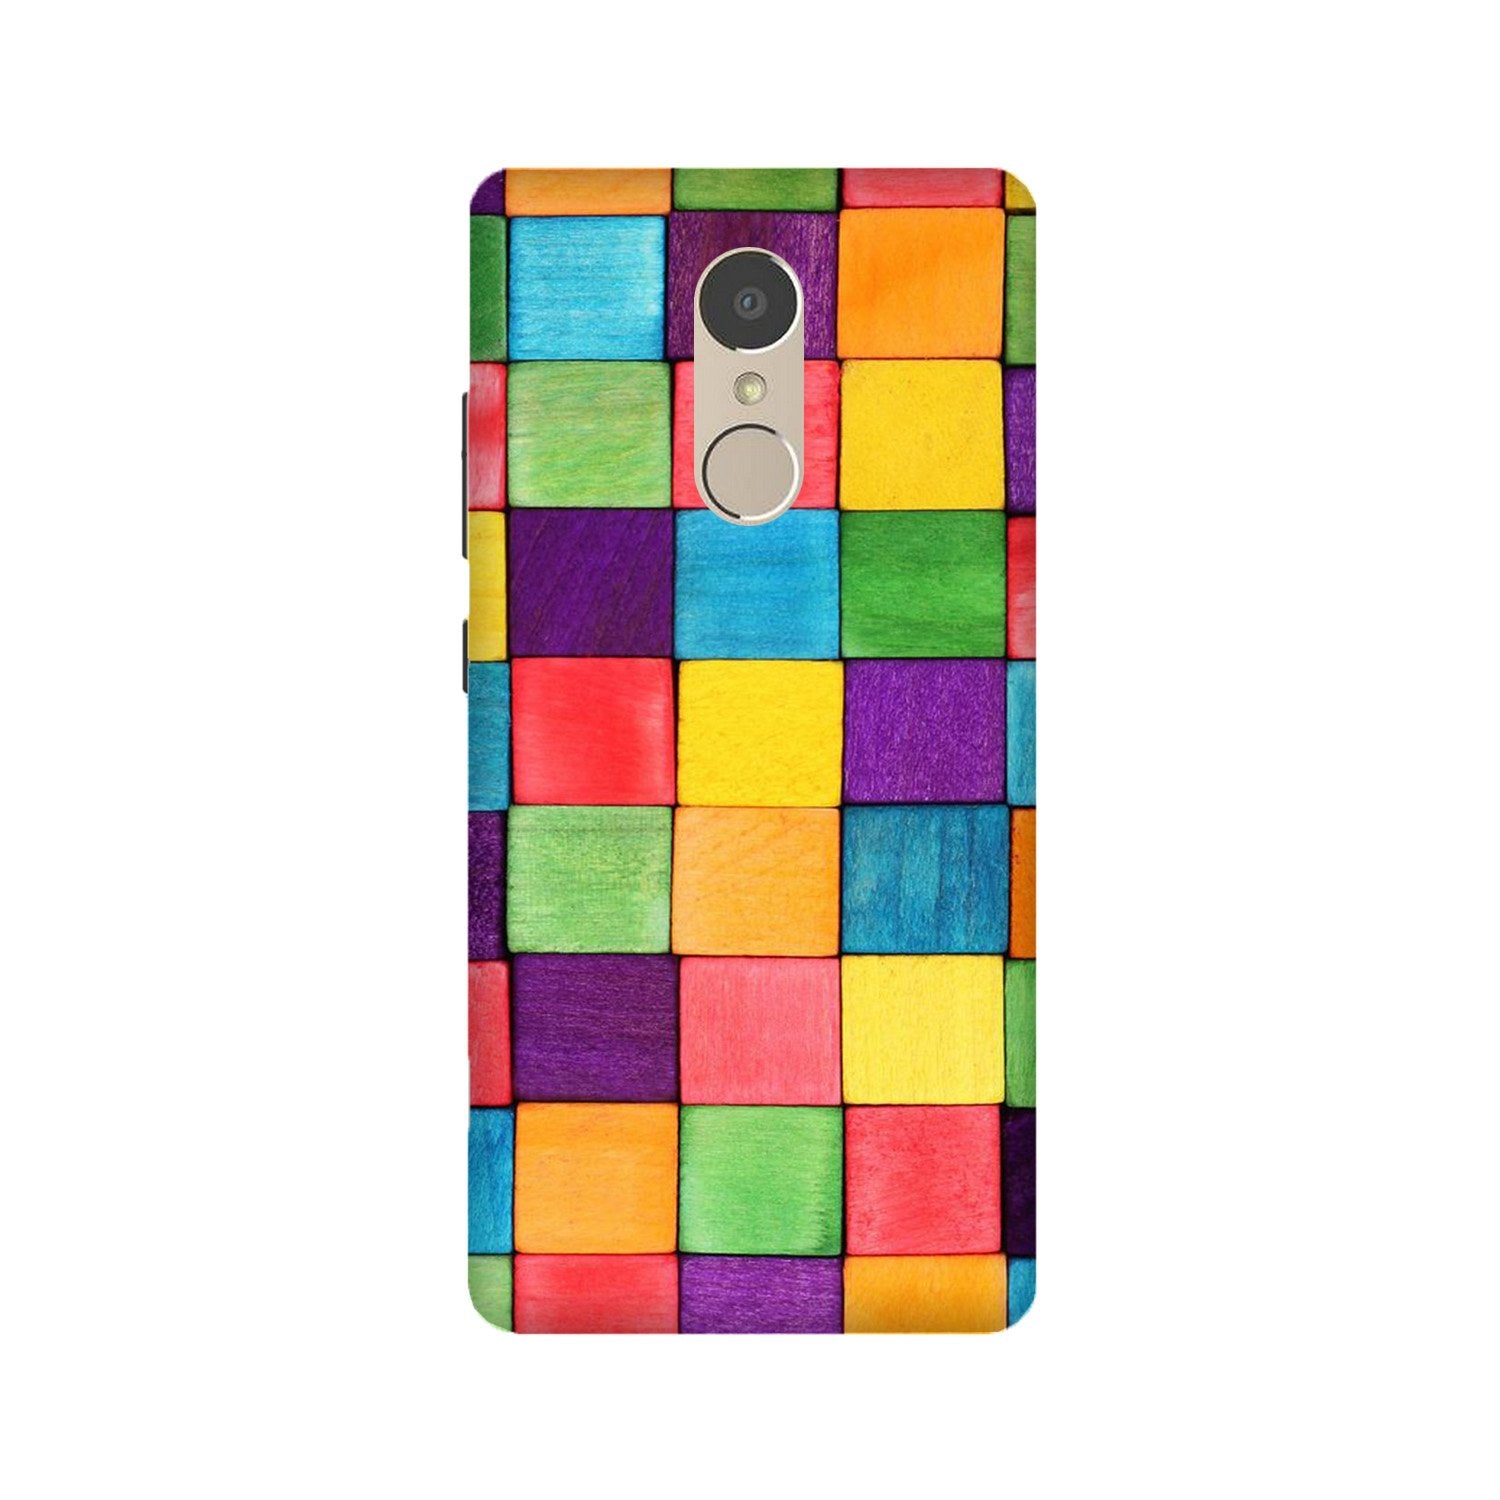 Colorful Square Case for Lenovo K6 Note (Design No. 218)